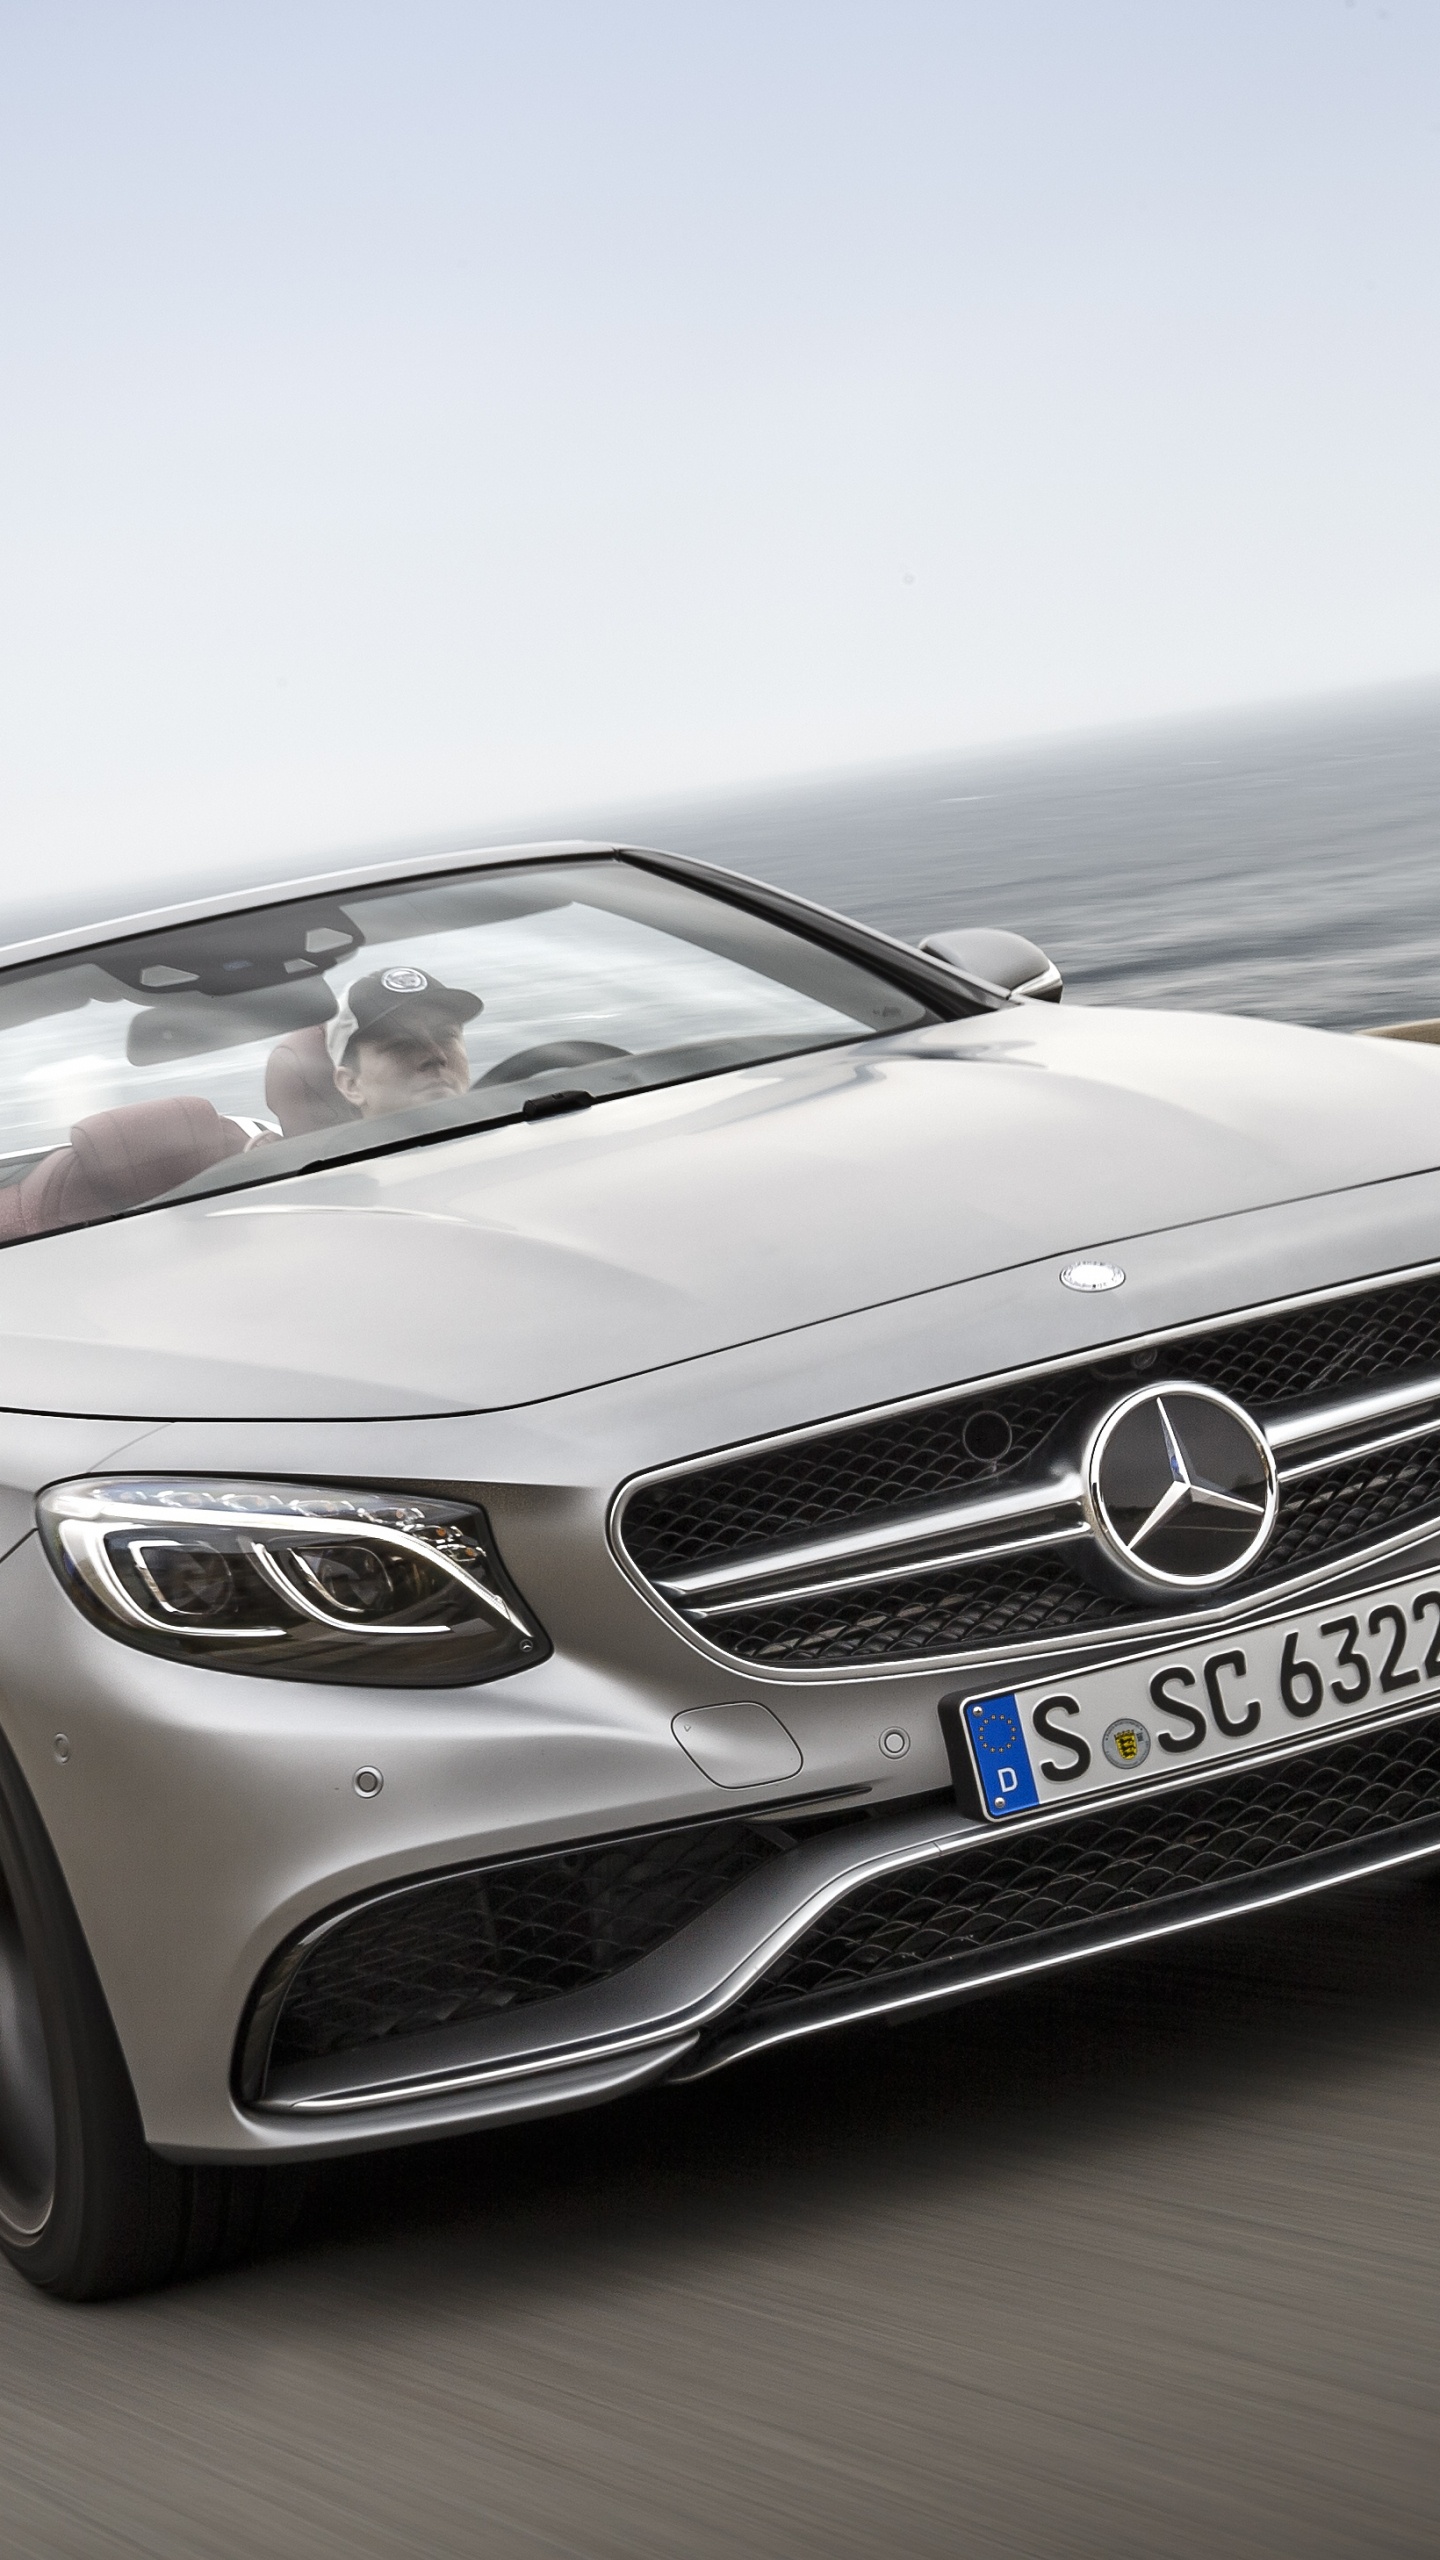 Mercedes Benz Cabriolet Coupé Gris Sur Route Pendant la Journée. Wallpaper in 1440x2560 Resolution